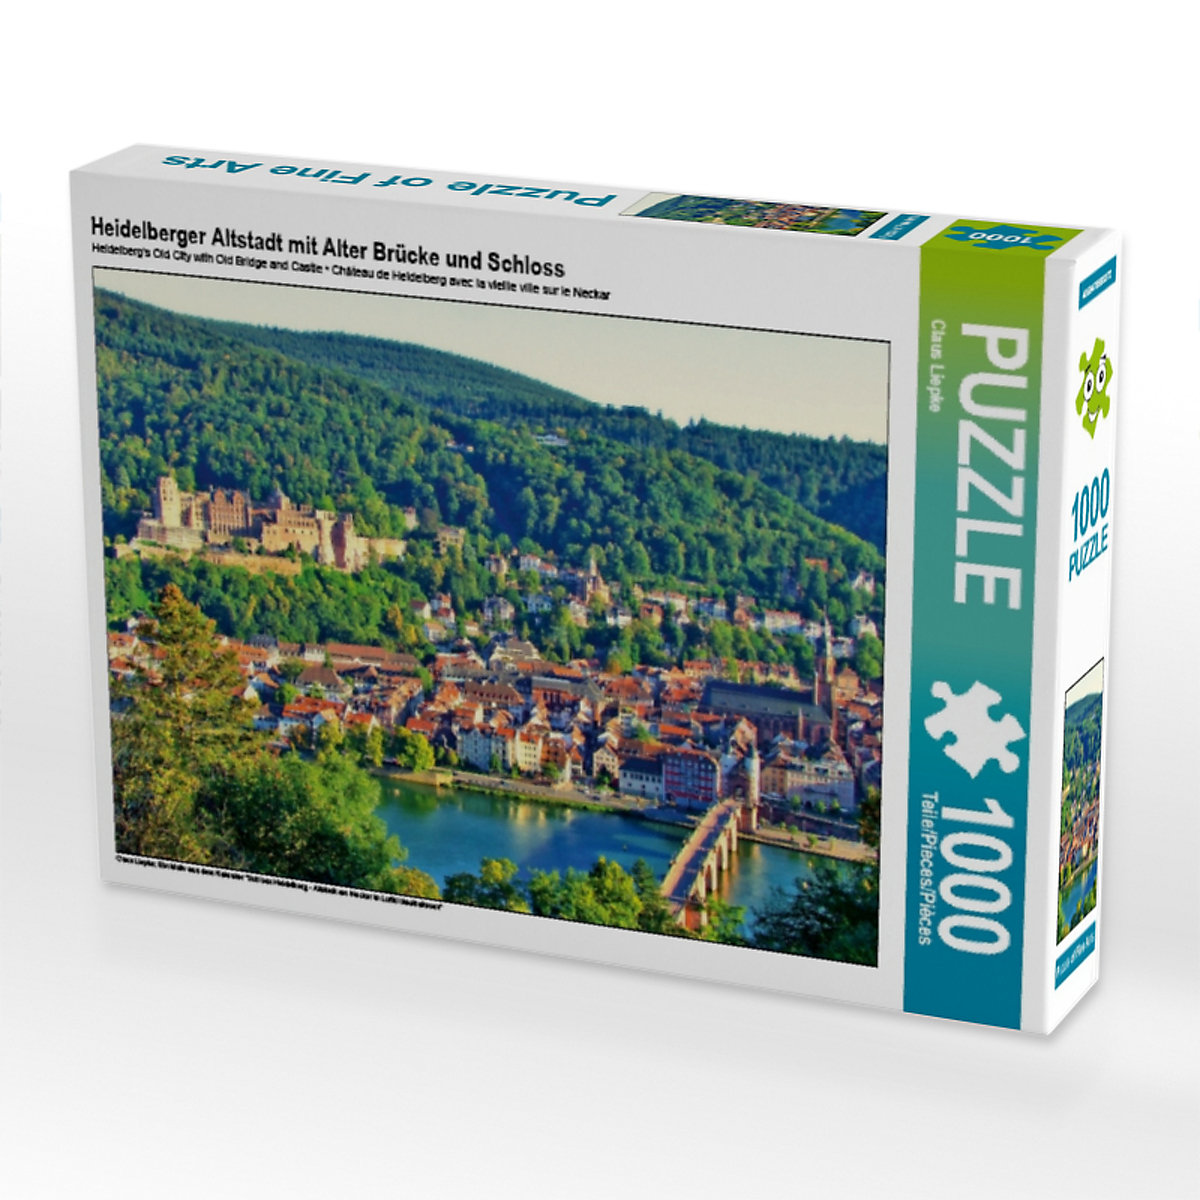 CALVENDO® Puzzle CALVENDO Puzzle Heidelberger Altstadt mit Alter Brücke und Schloss 1000 Teile Foto-Puzzle für glückliche Stunden